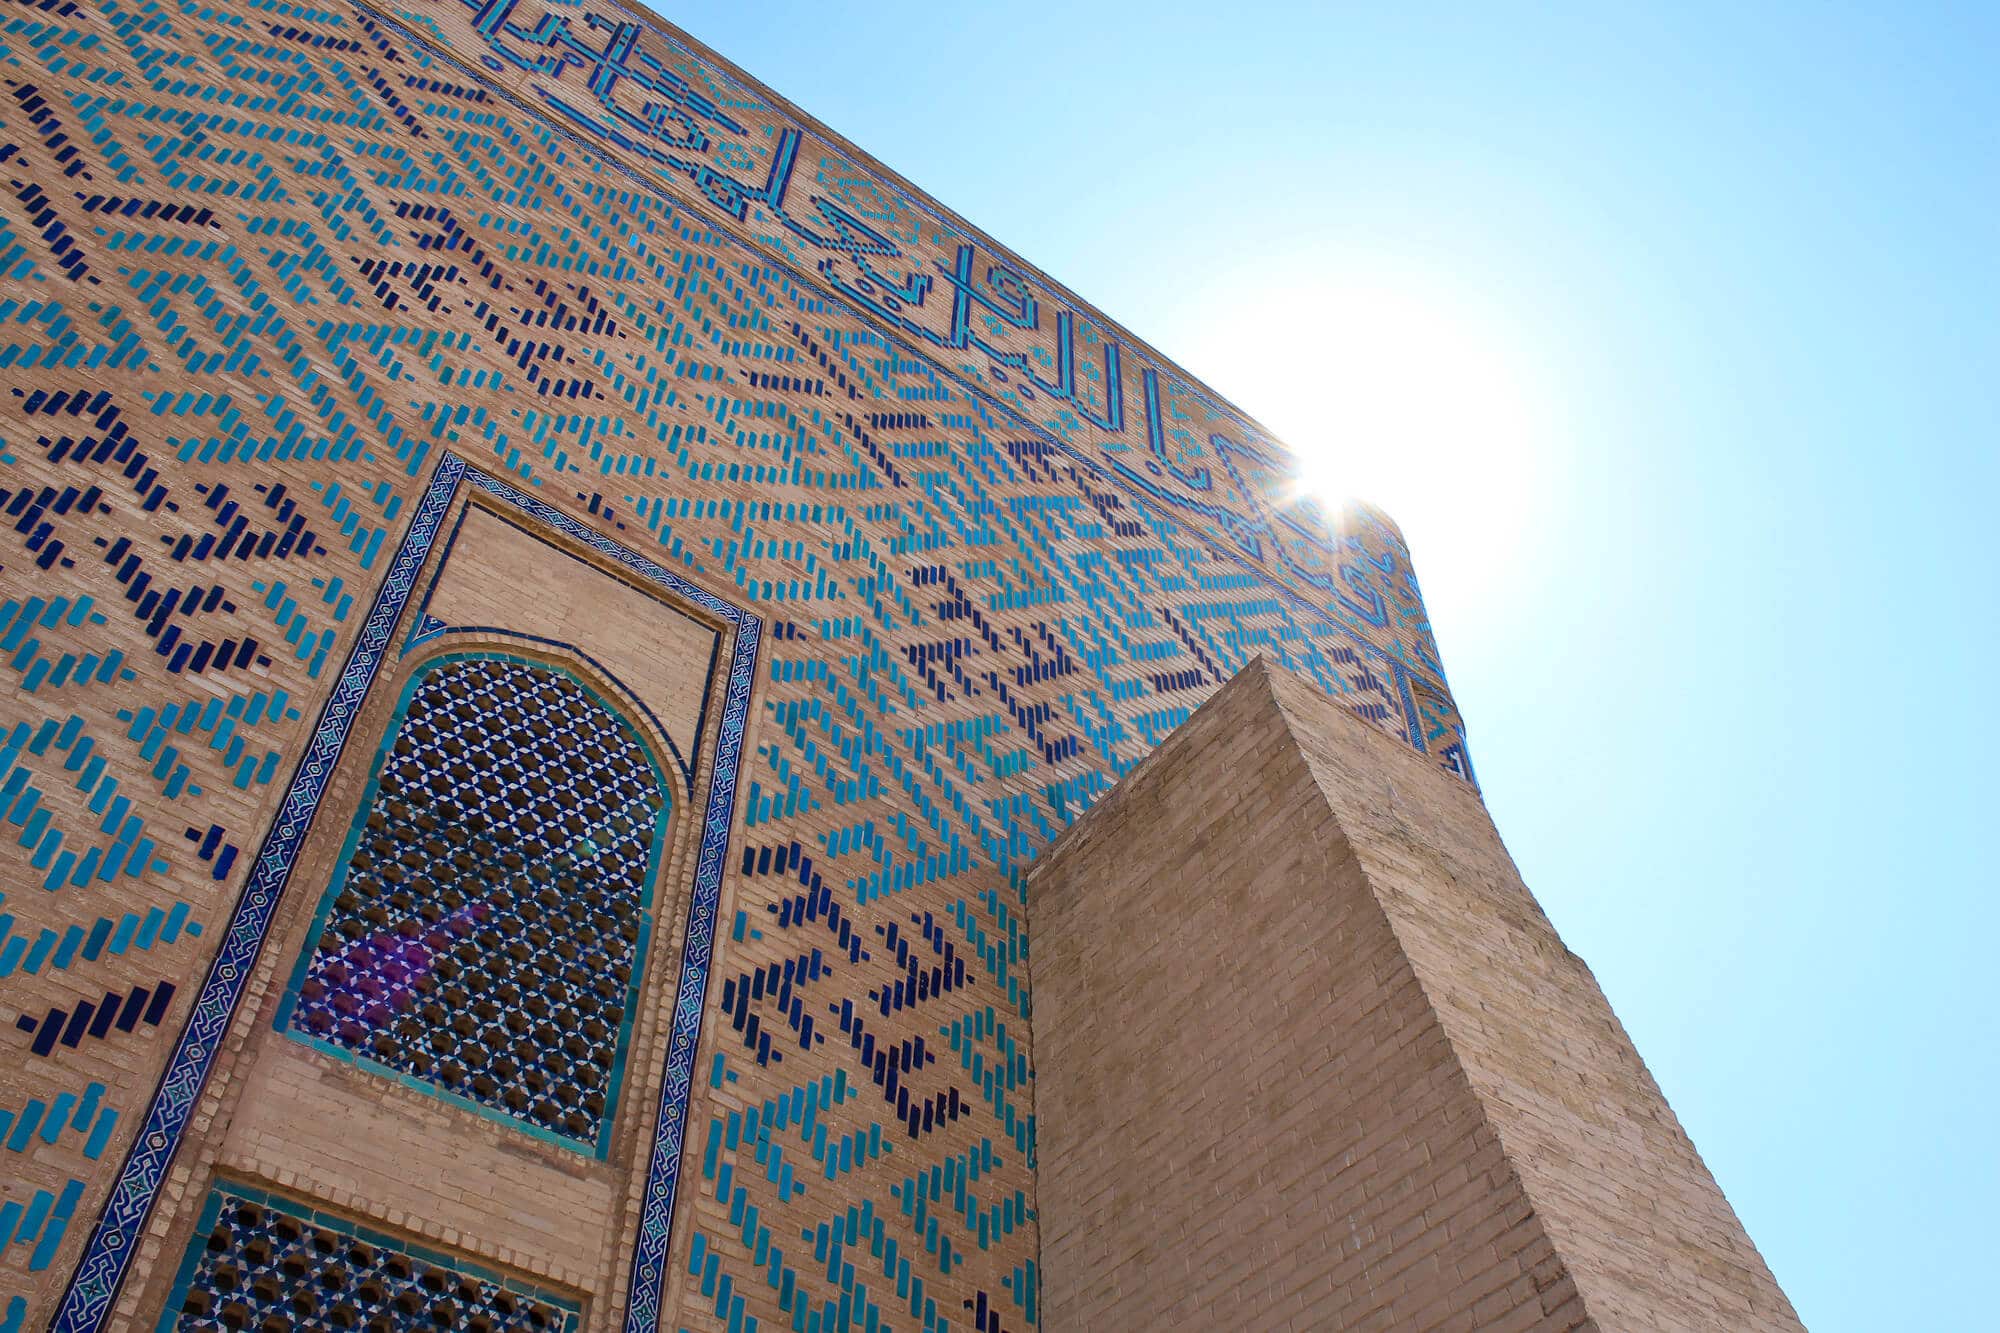 Info Shymkent - Hot sun at Yassawi Mausoleum